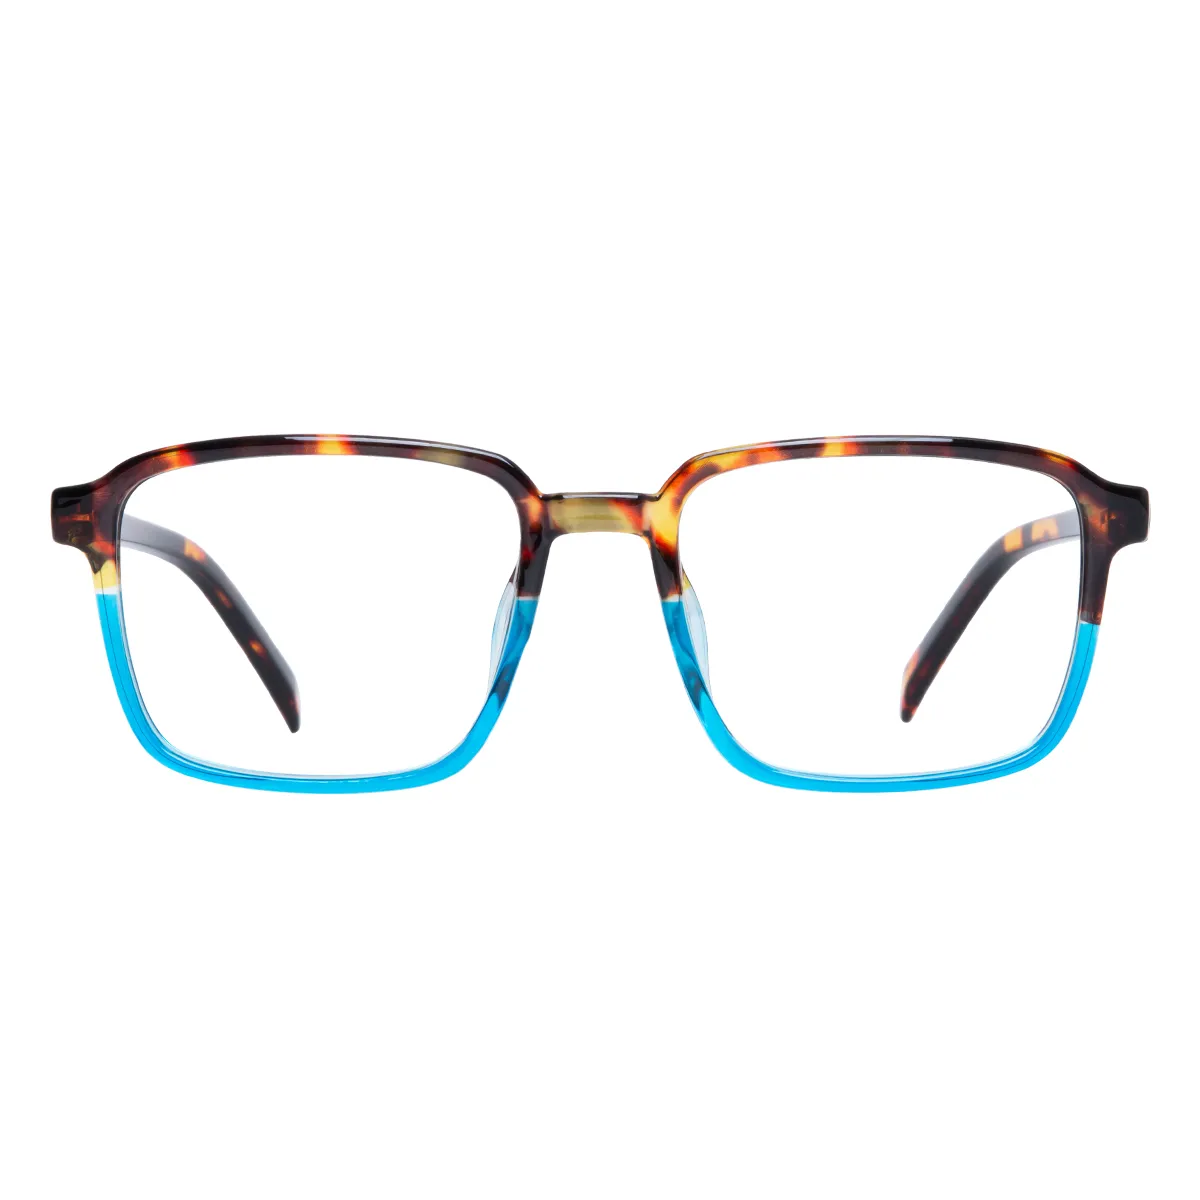 Marlowe - Square Tortoiseshell-Blue Reading glasses for Men & Women